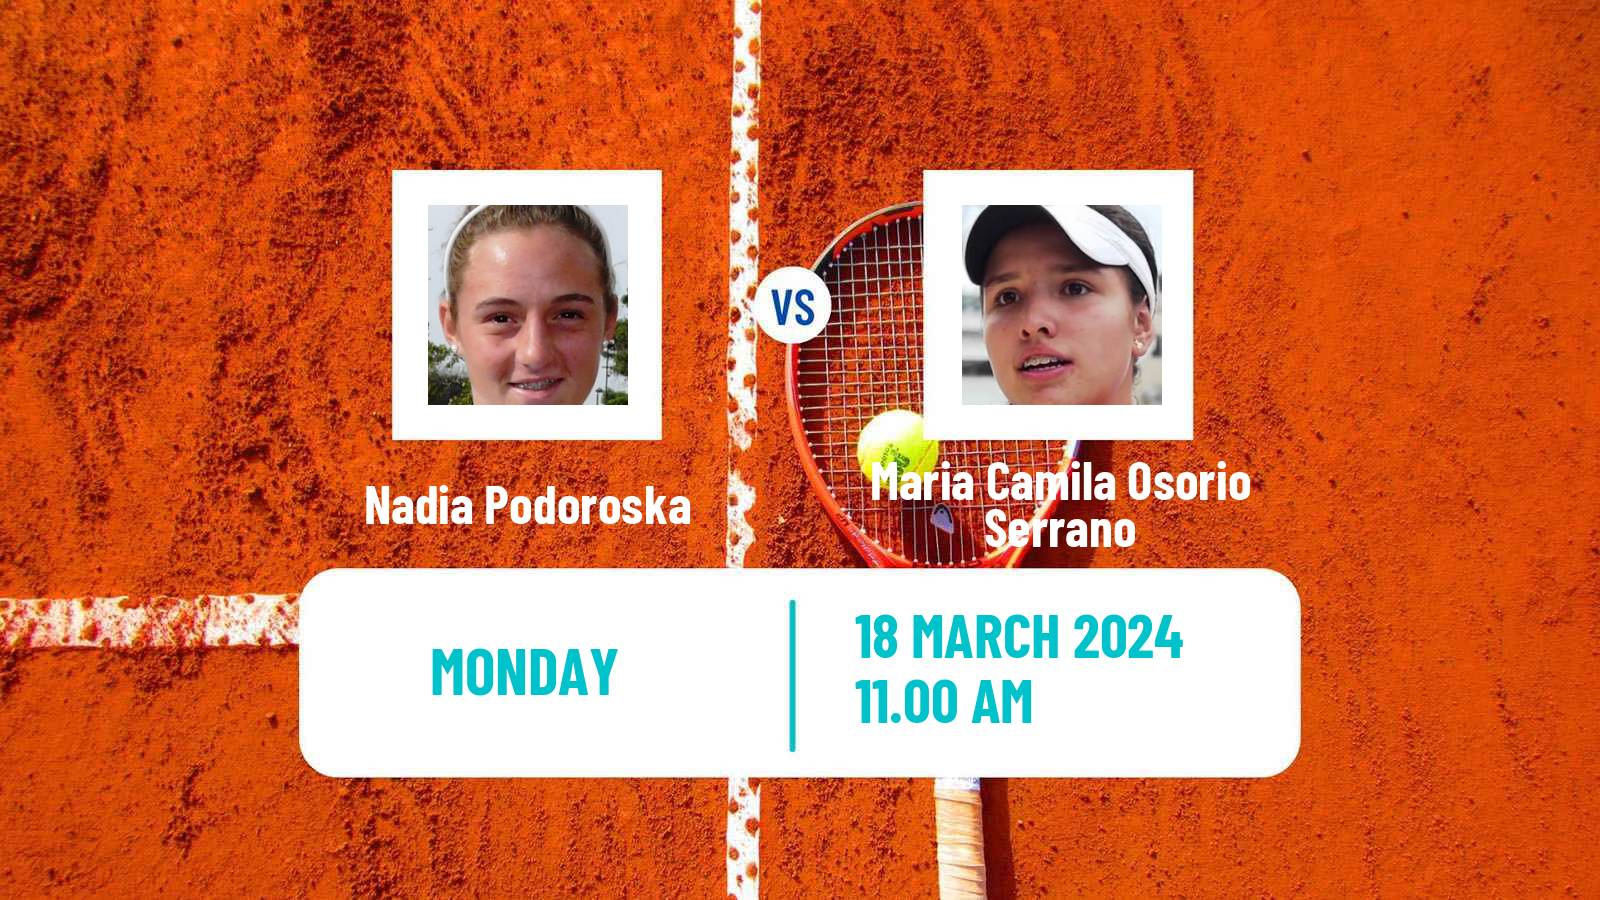 Tennis WTA Miami Nadia Podoroska - Maria Camila Osorio Serrano